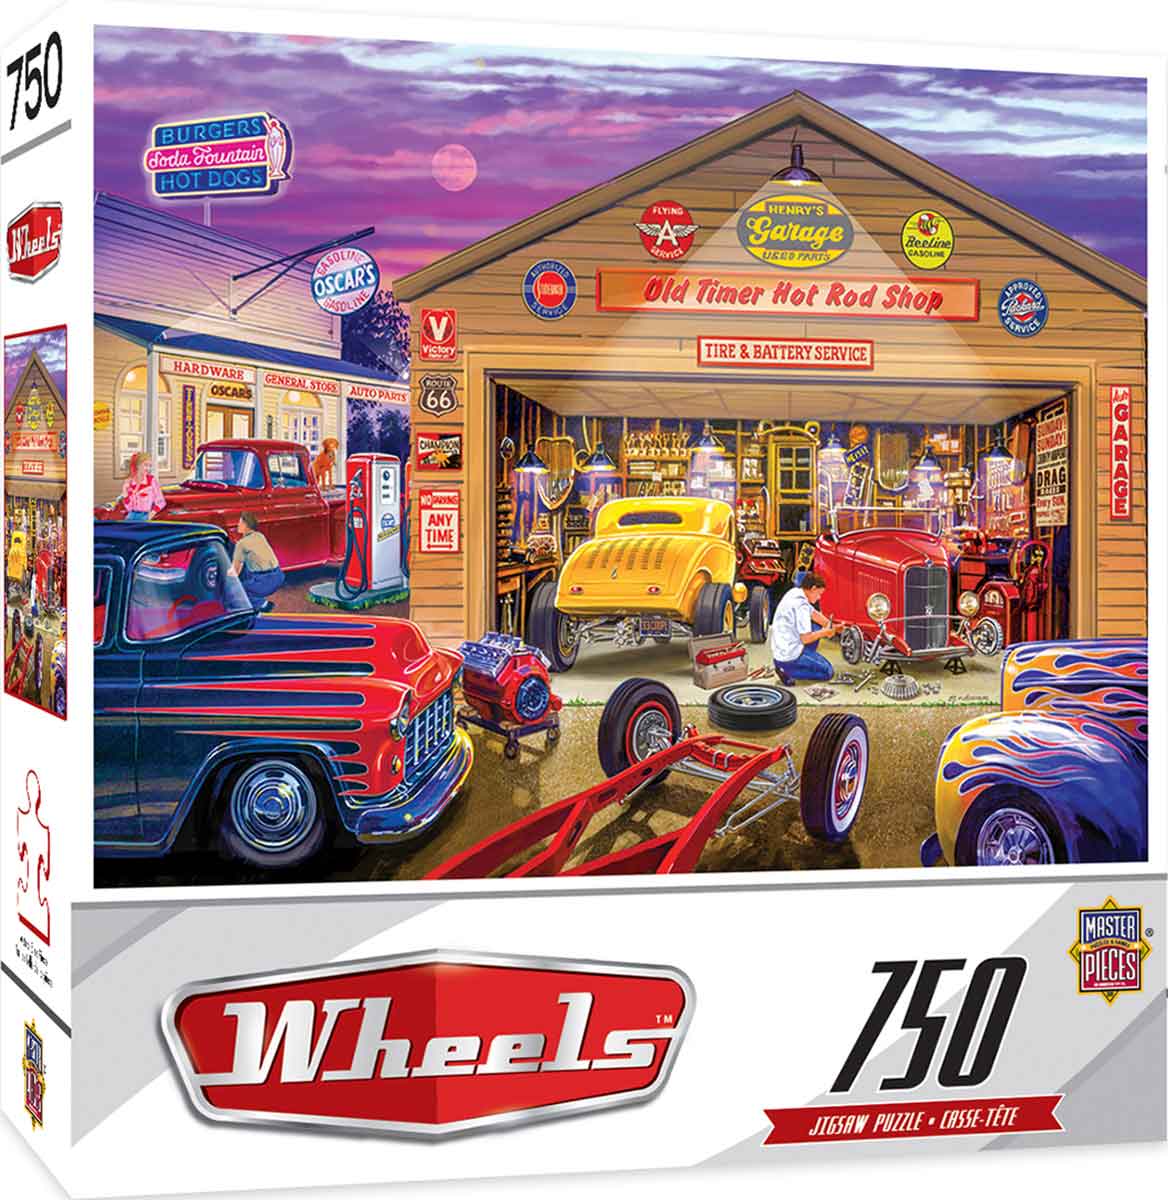 Puzzle Garagem vintage, 1 000 peças